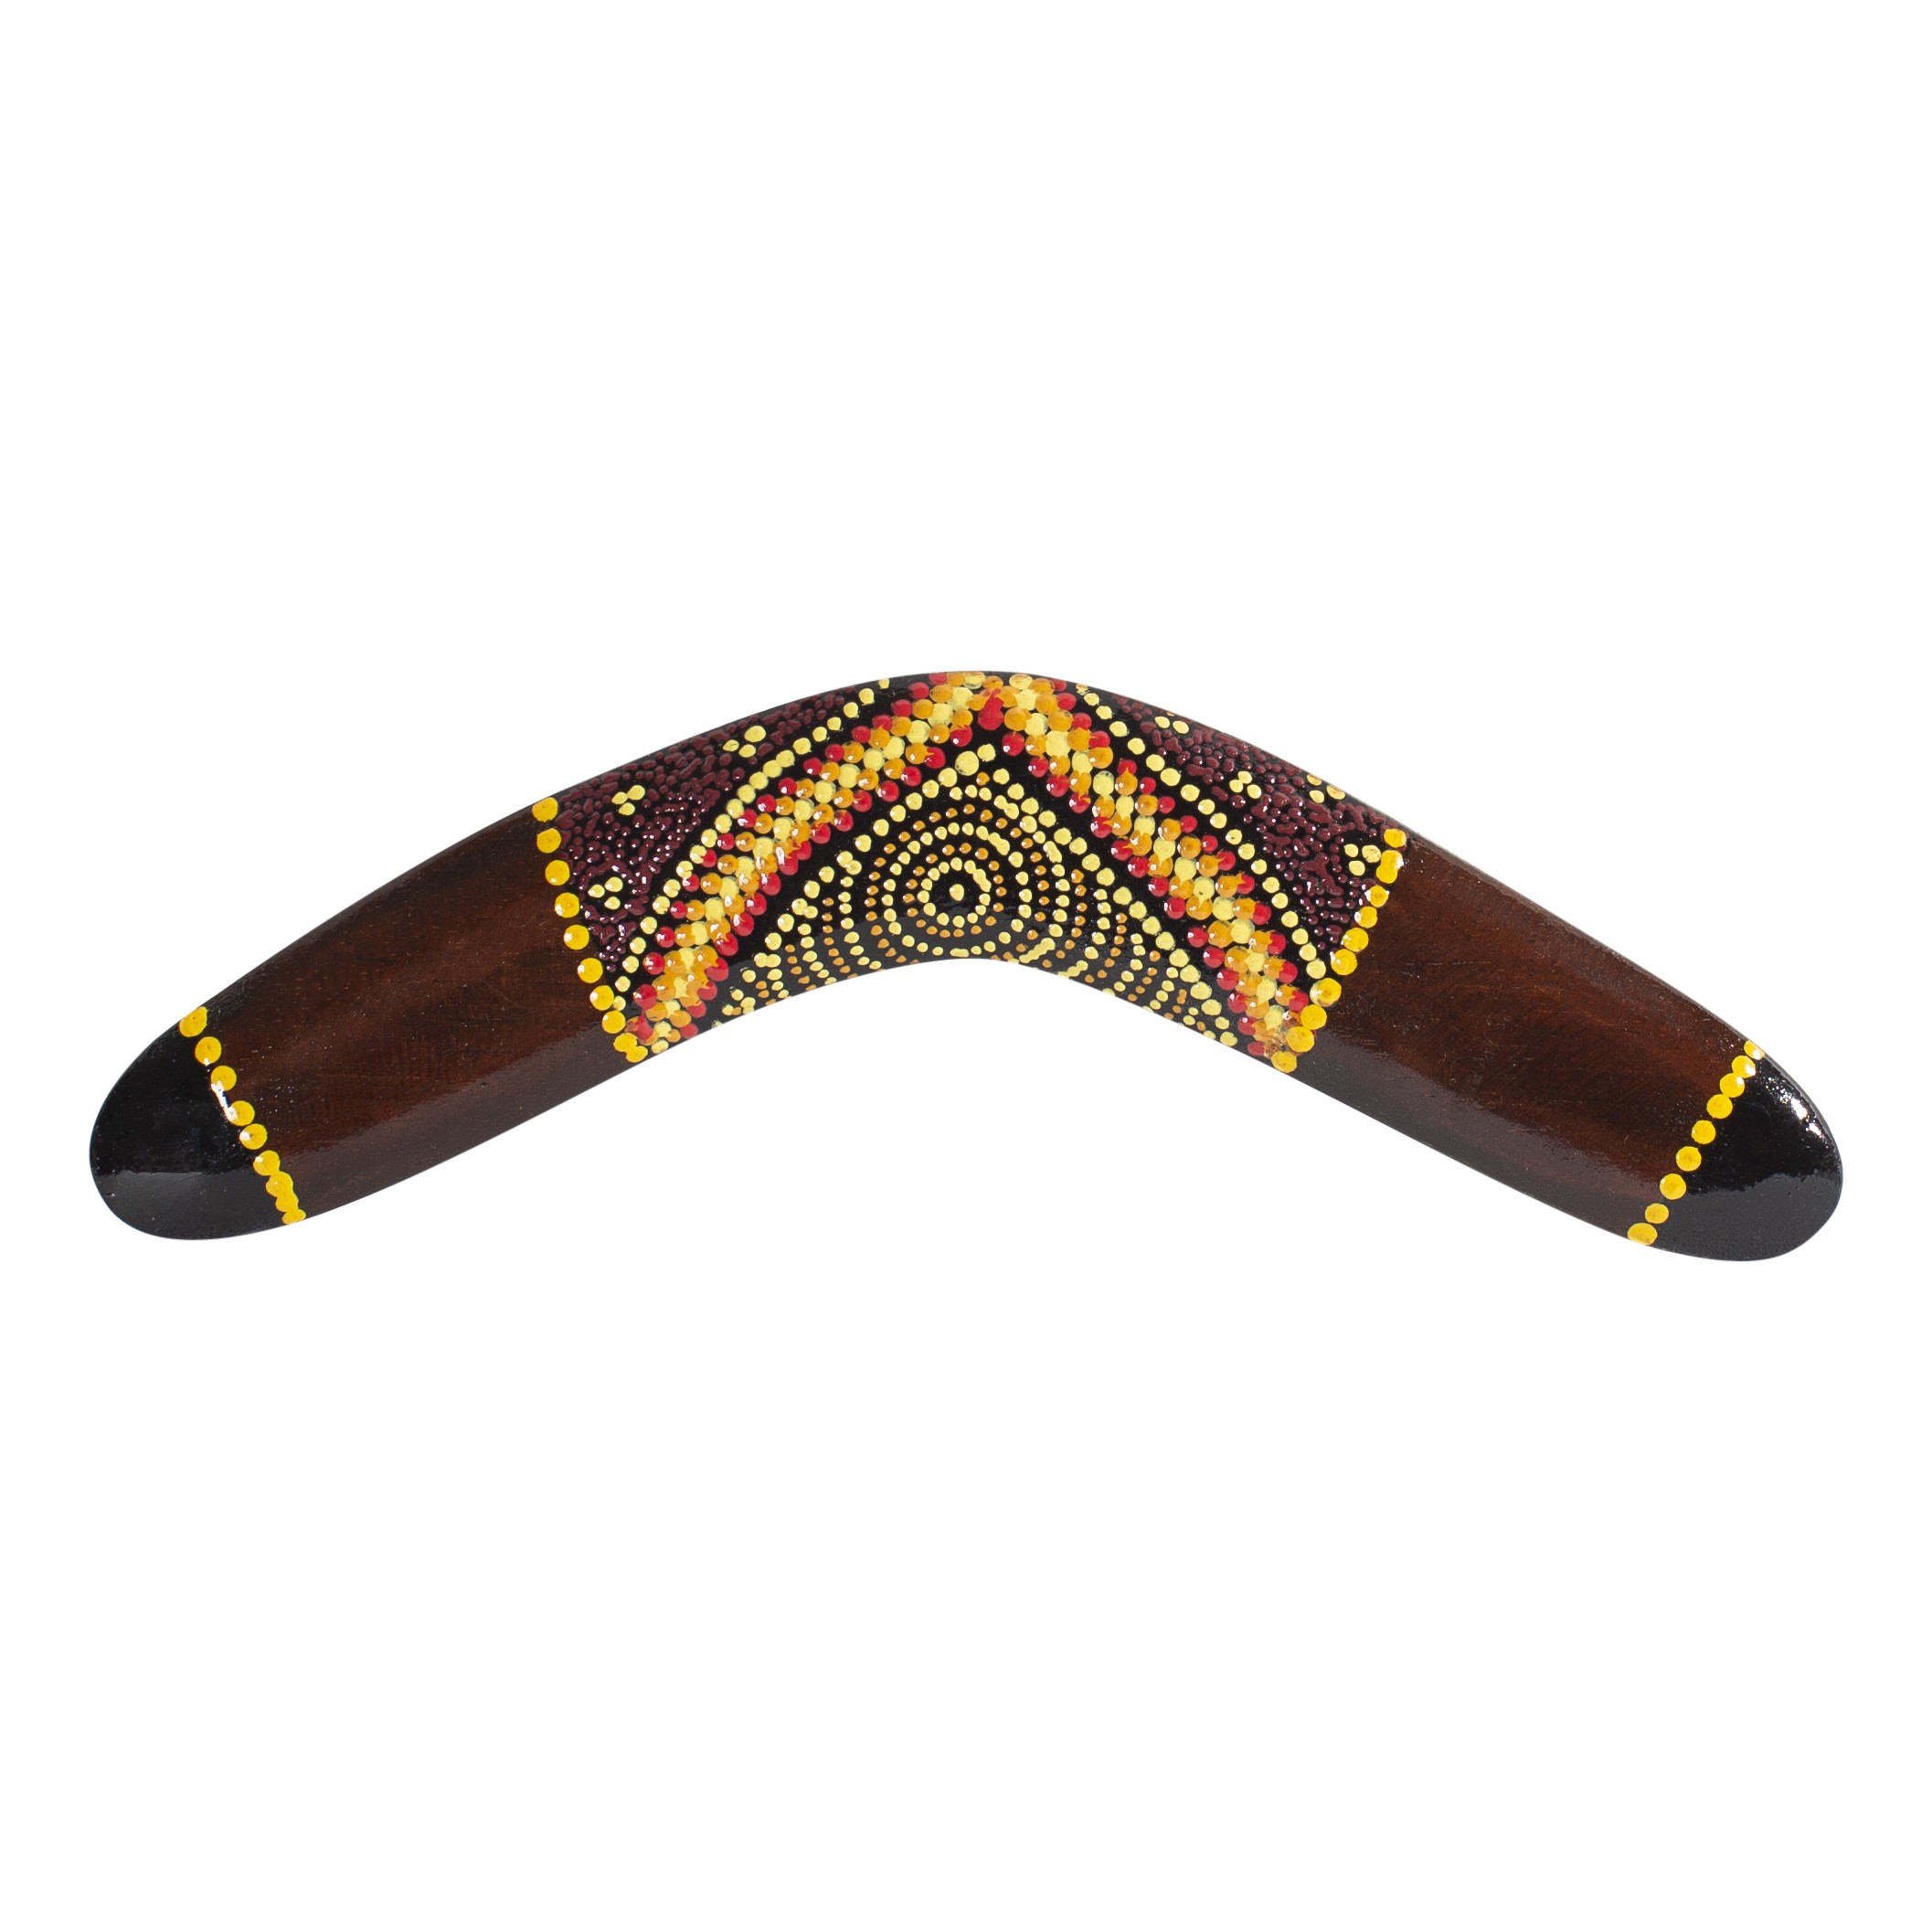 australian-treasures-boomerang-30cm-118-brown-incl-displaystand.jpg